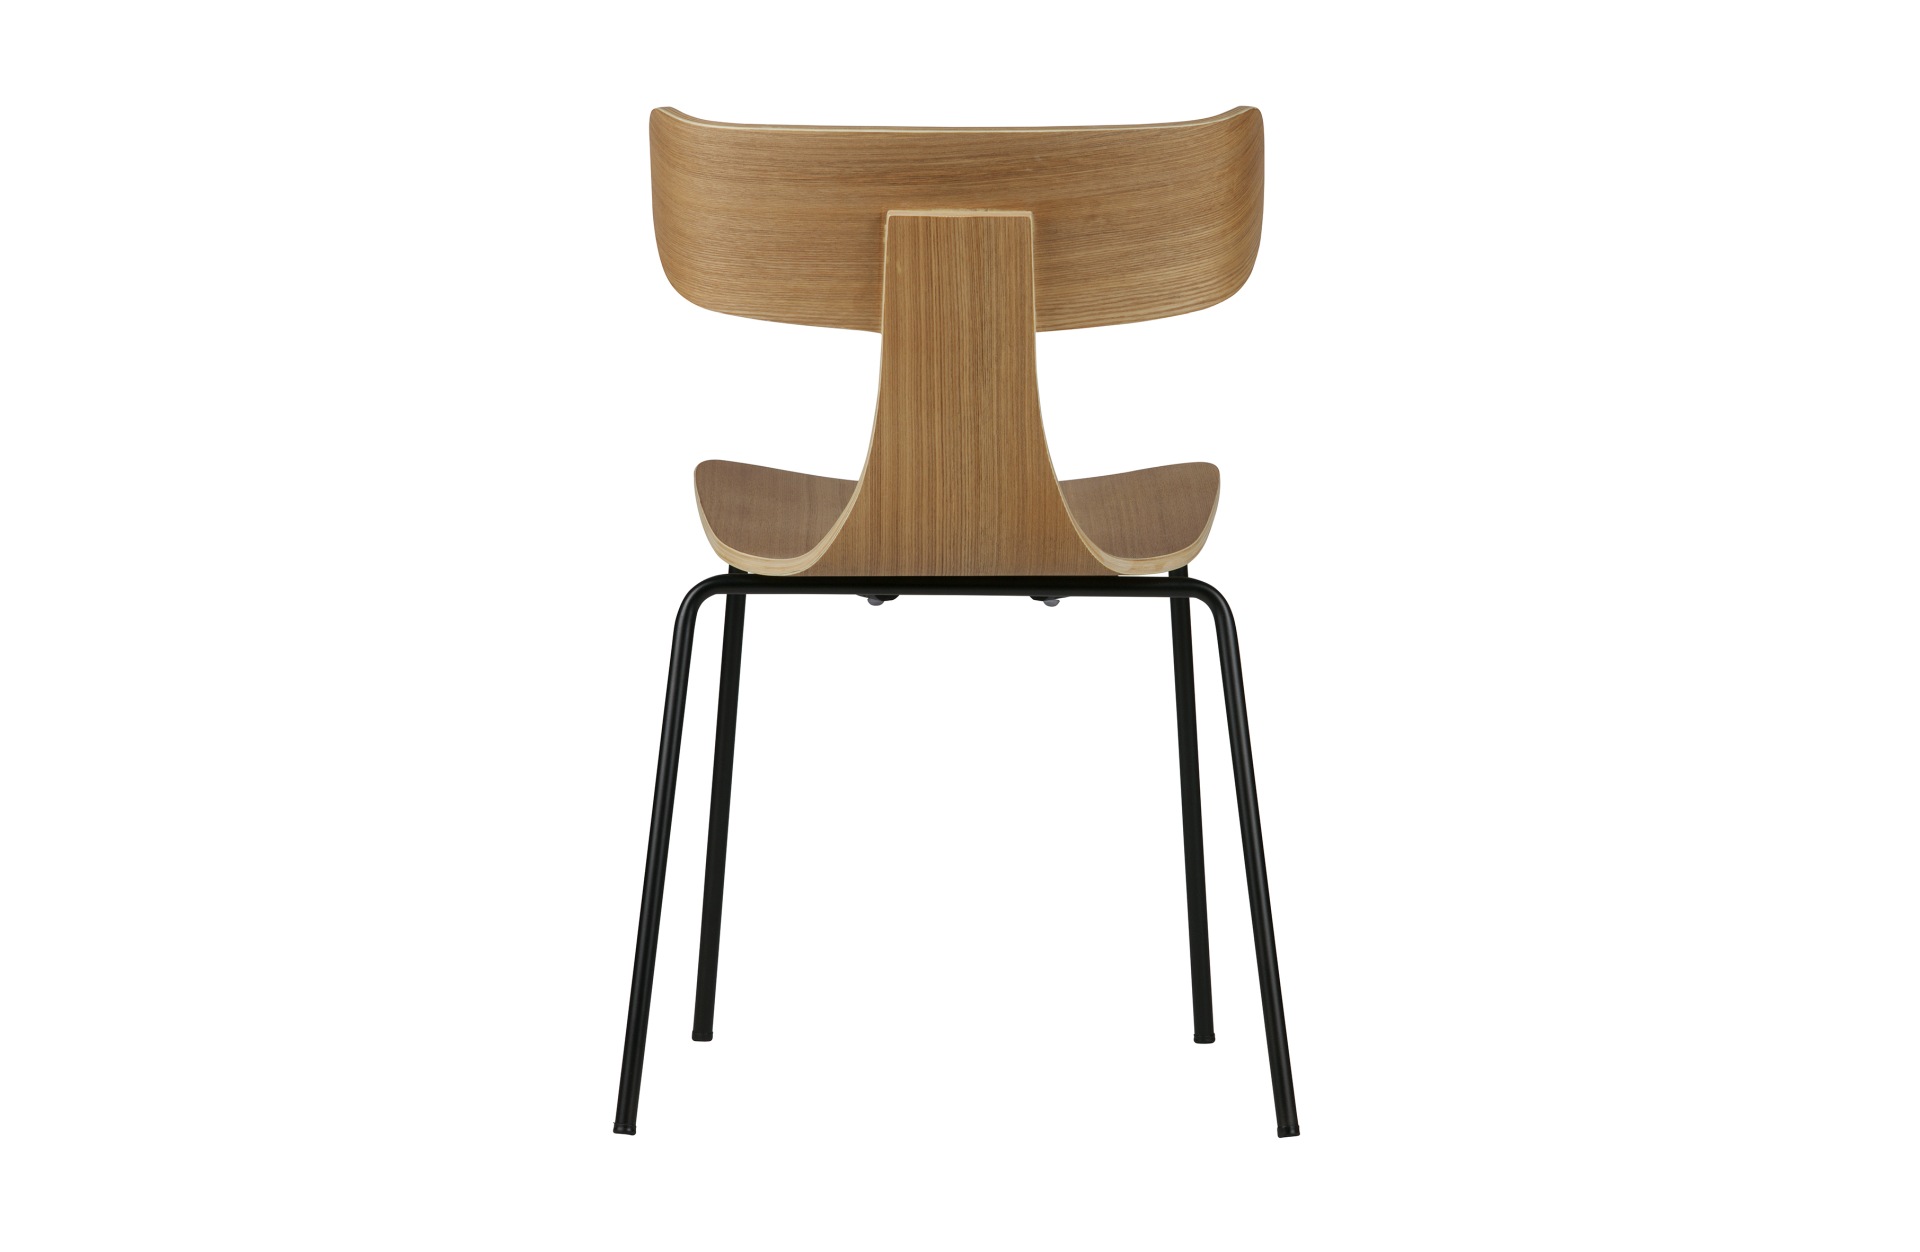 Der Stuhl Form überzeugt mit seinem besonderen Design. Gefertigt wurde der Stuhl aus Holz, welches einen natur Farbton besitzt. Das Gestell ist schwarz und wurde aus Metall gefertigt.